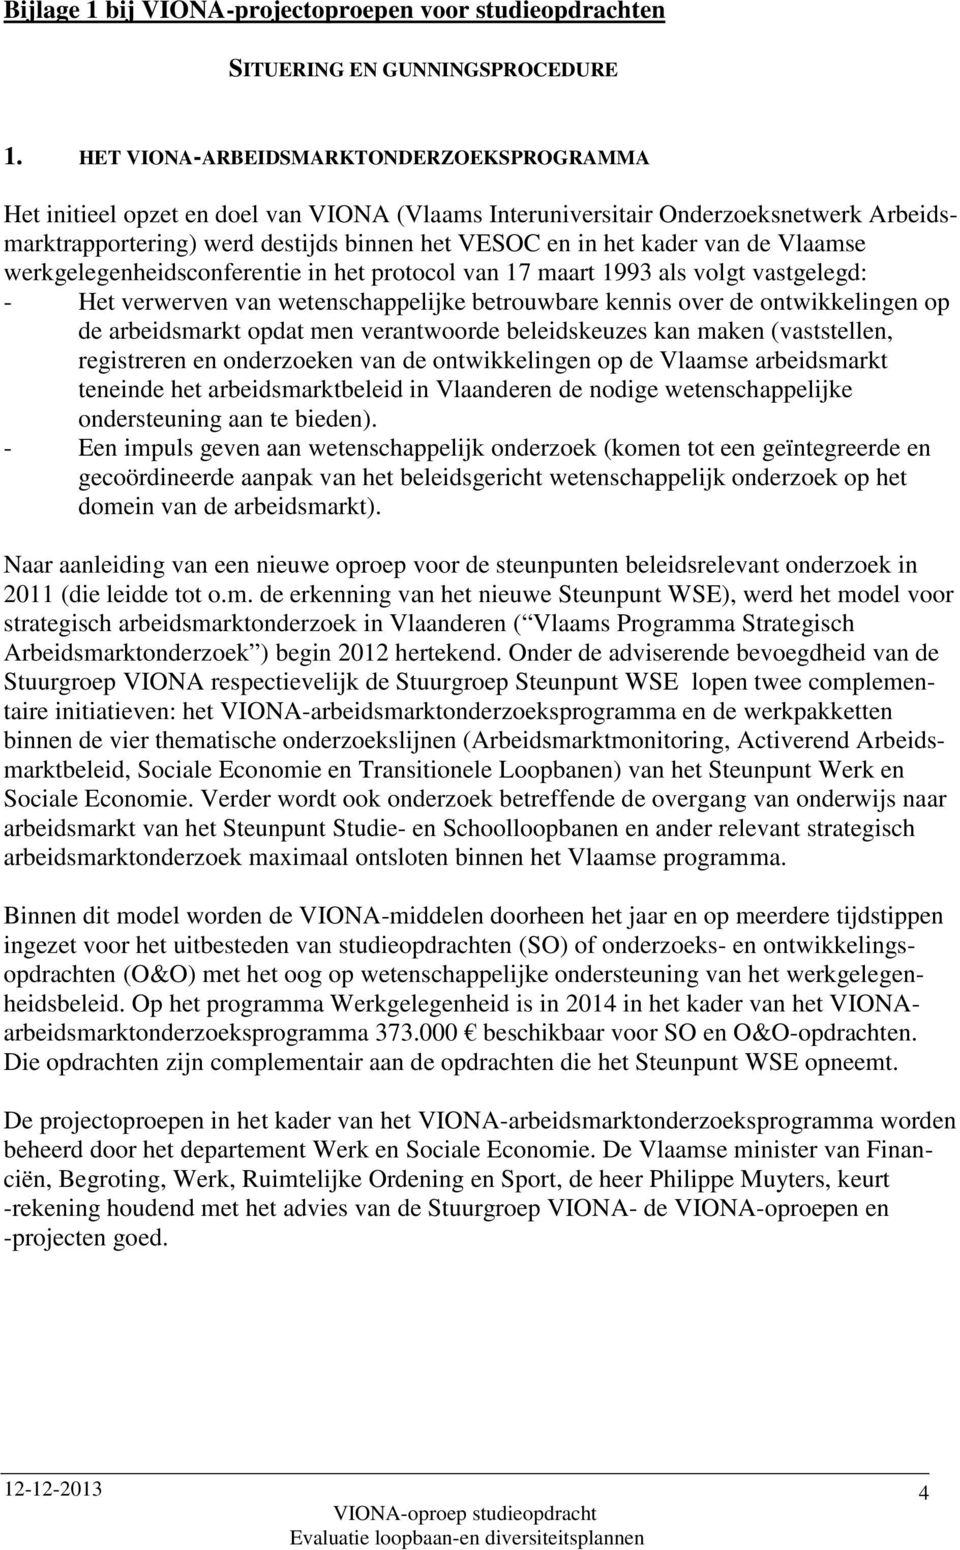 de Vlaamse werkgelegenheidsconferentie in het protocol van 17 maart 1993 als volgt vastgelegd: - Het verwerven van wetenschappelijke betrouwbare kennis over de ontwikkelingen op de arbeidsmarkt opdat